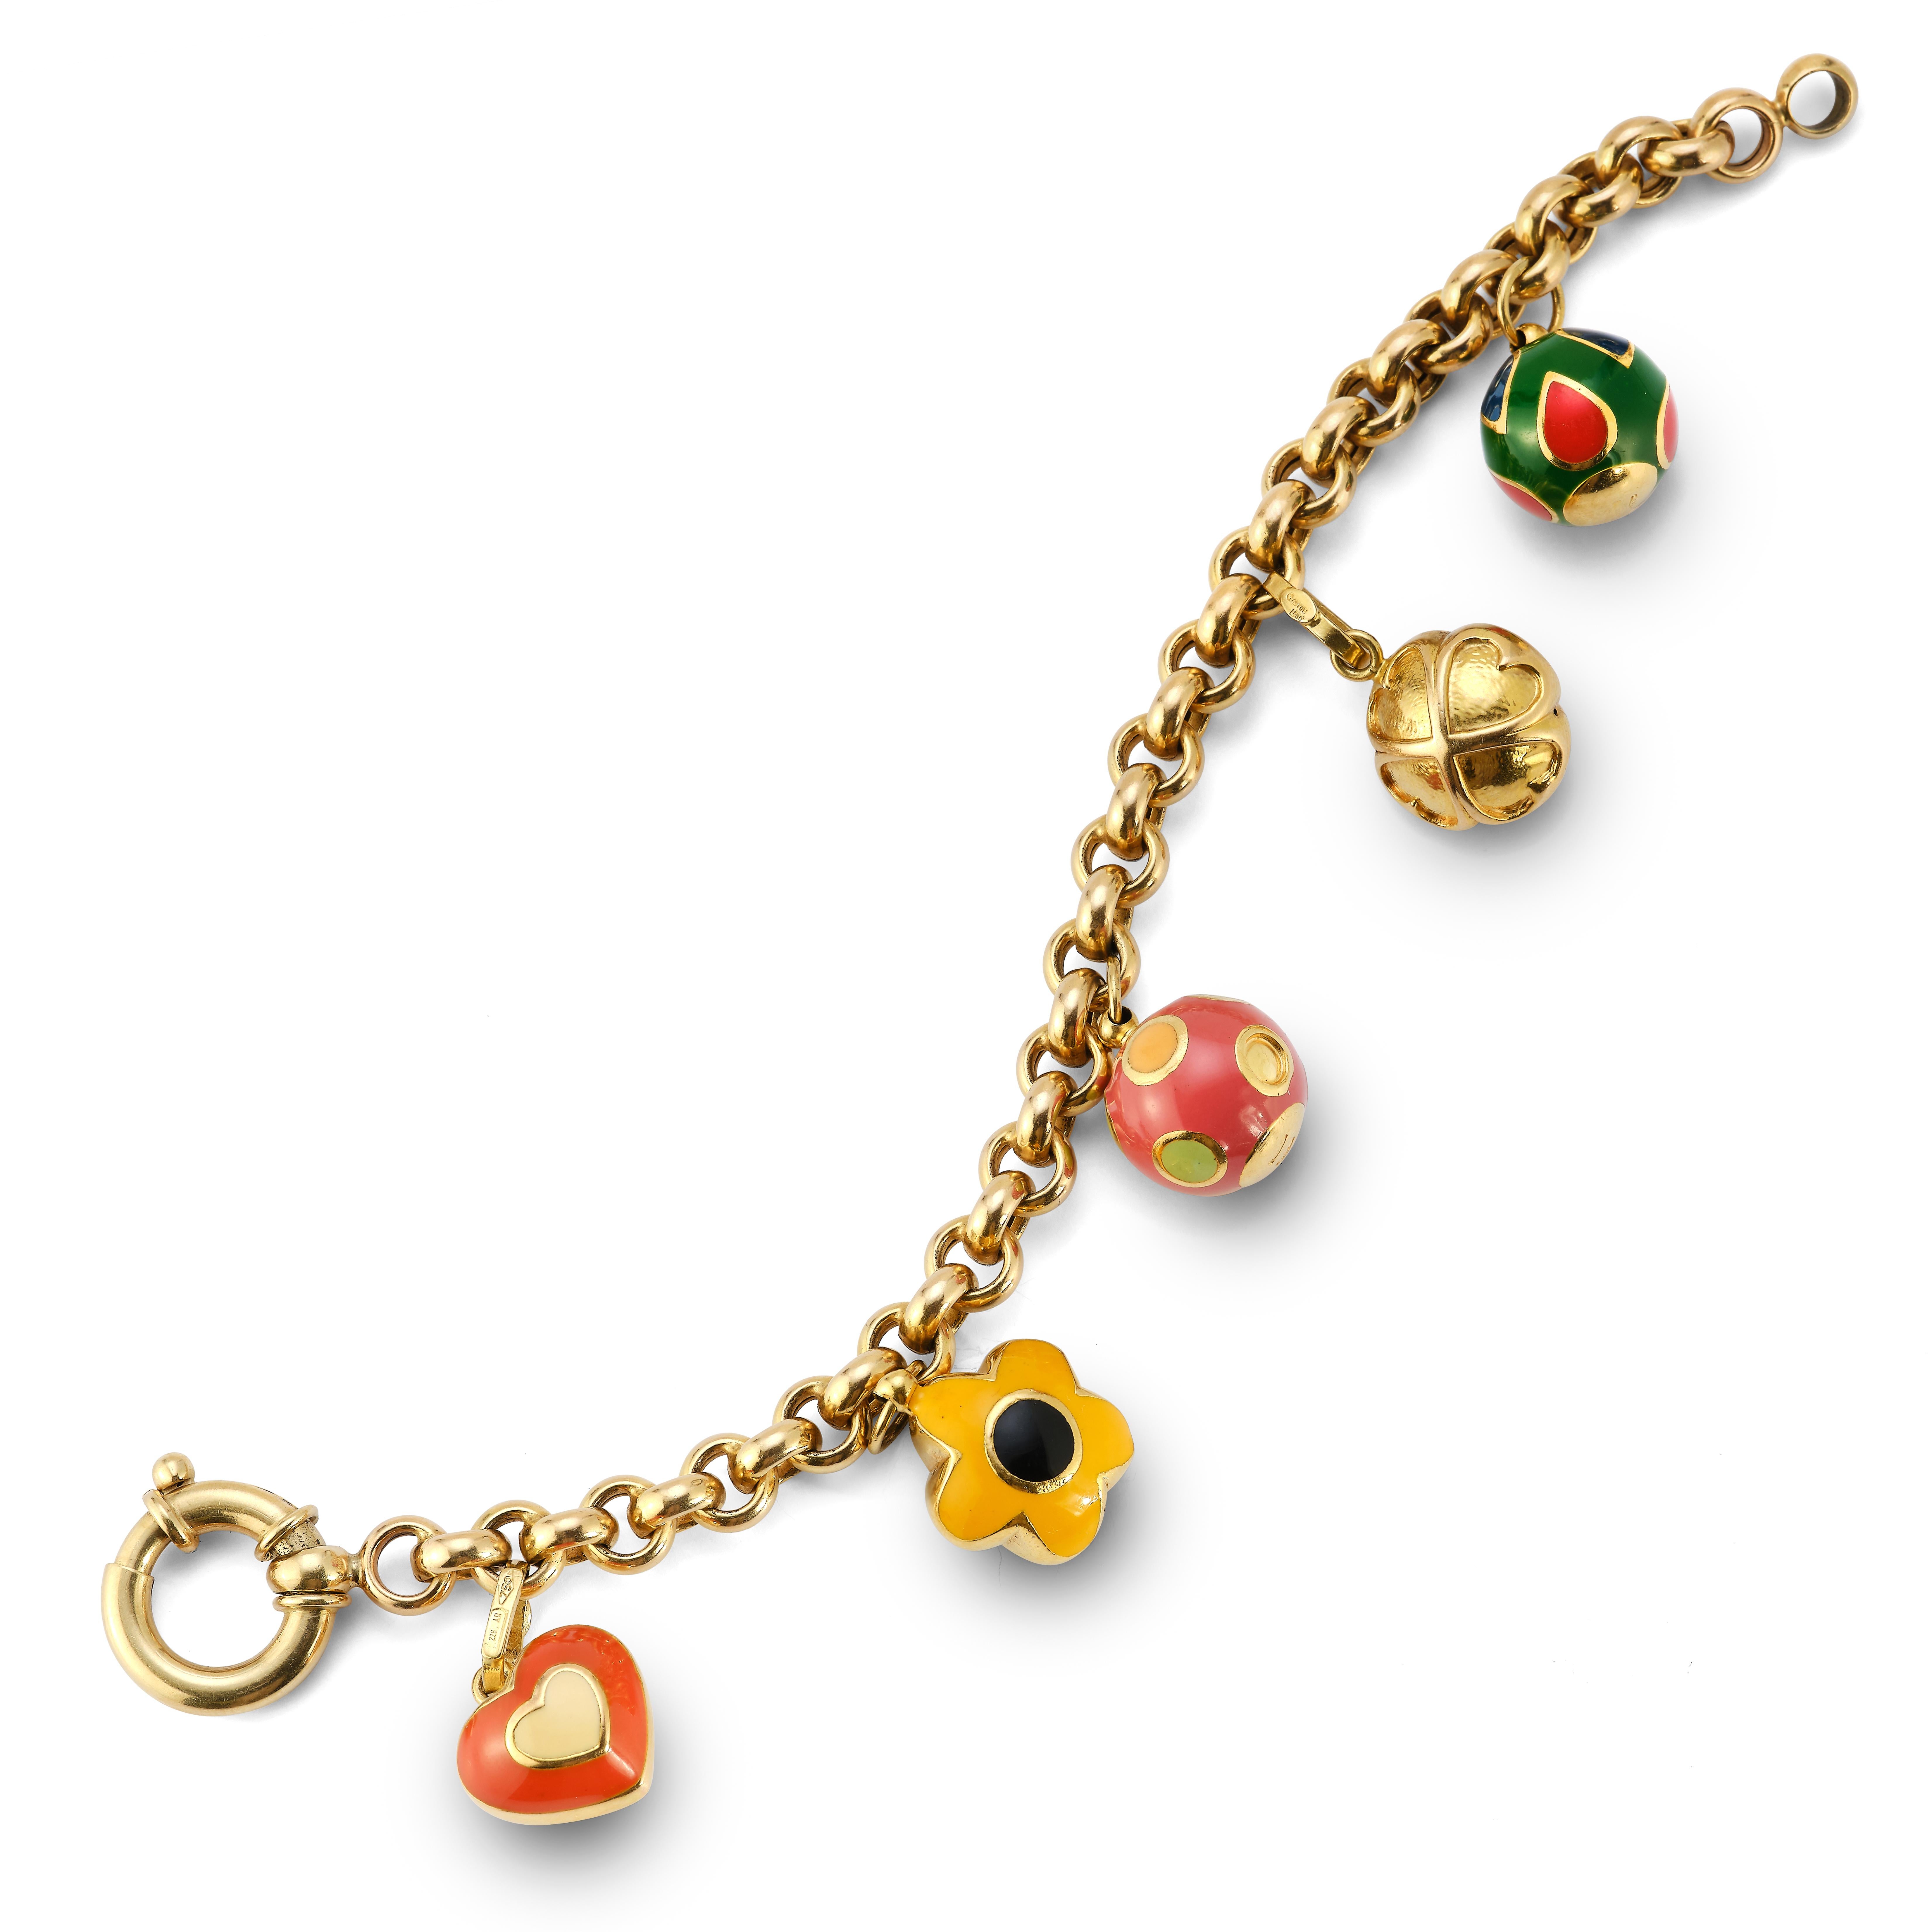 Gold  und Emaille-Charm-Armband
 
Gelbgoldarmband mit 5 runden emaillierten Goldanhängern 

Länge: 7,5